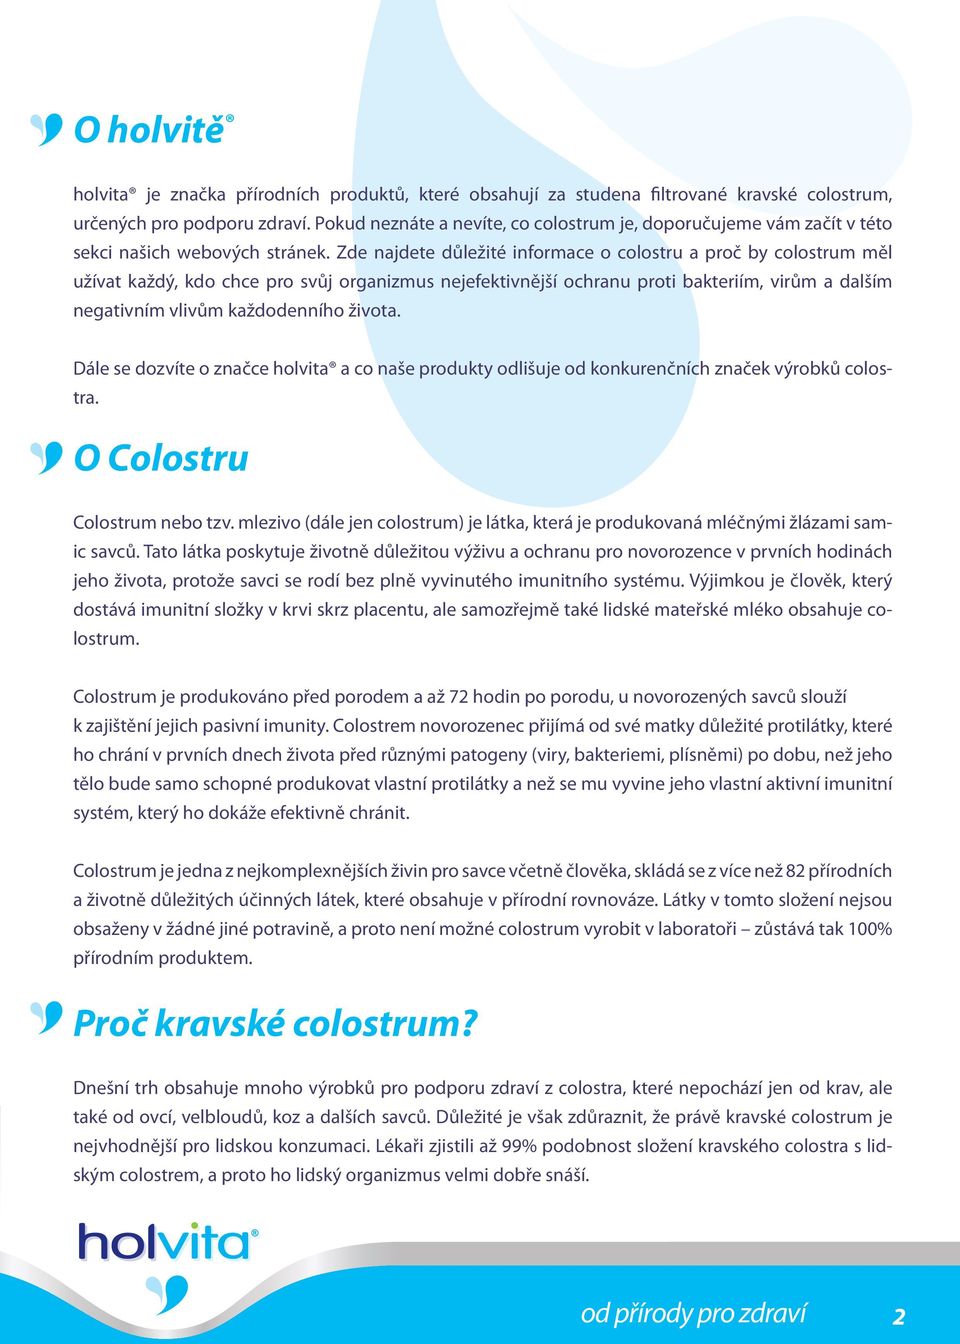 Zde najdete důležité informace o colostru a proč by colostrum měl užívat každý, kdo chce pro svůj organizmus nejefektivnější ochranu proti bakteriím, virům a dalším negativním vlivům každodenního